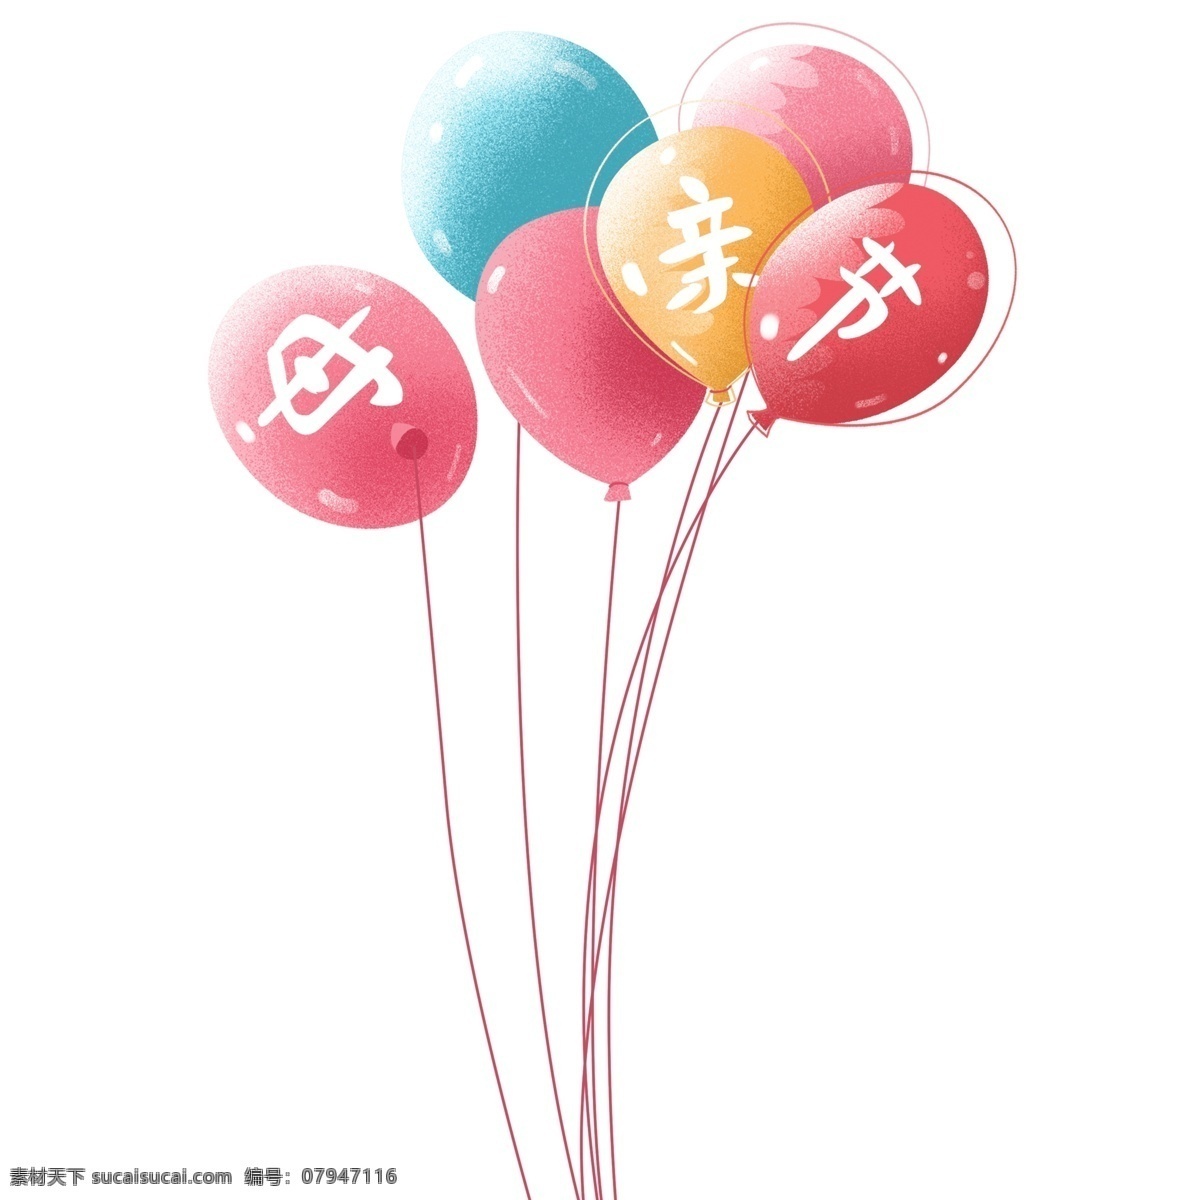 彩绘 母亲节 束 气球 插画 元素 彩色 节日 漂浮气球 手绘设计